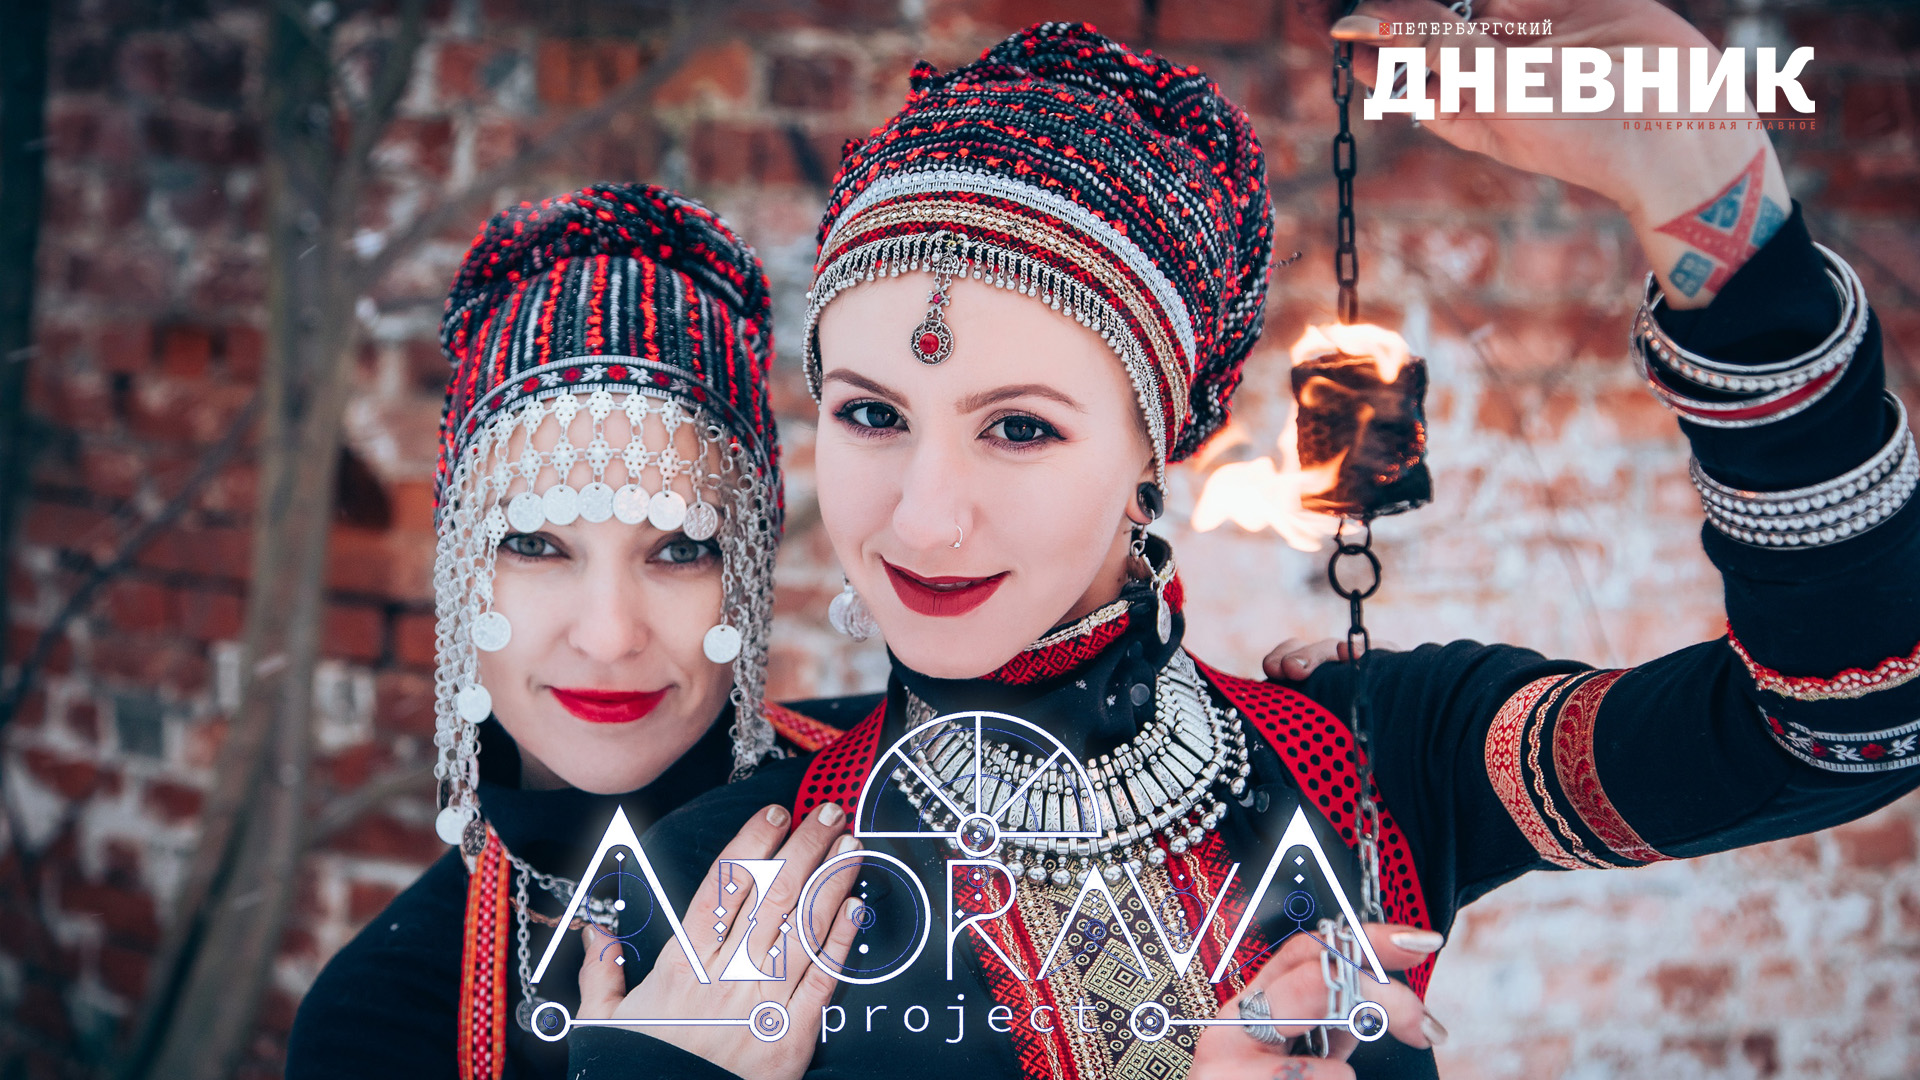 Азорава project - Когда есть возможность выразить свою внутреннюю красоту – это про любовь